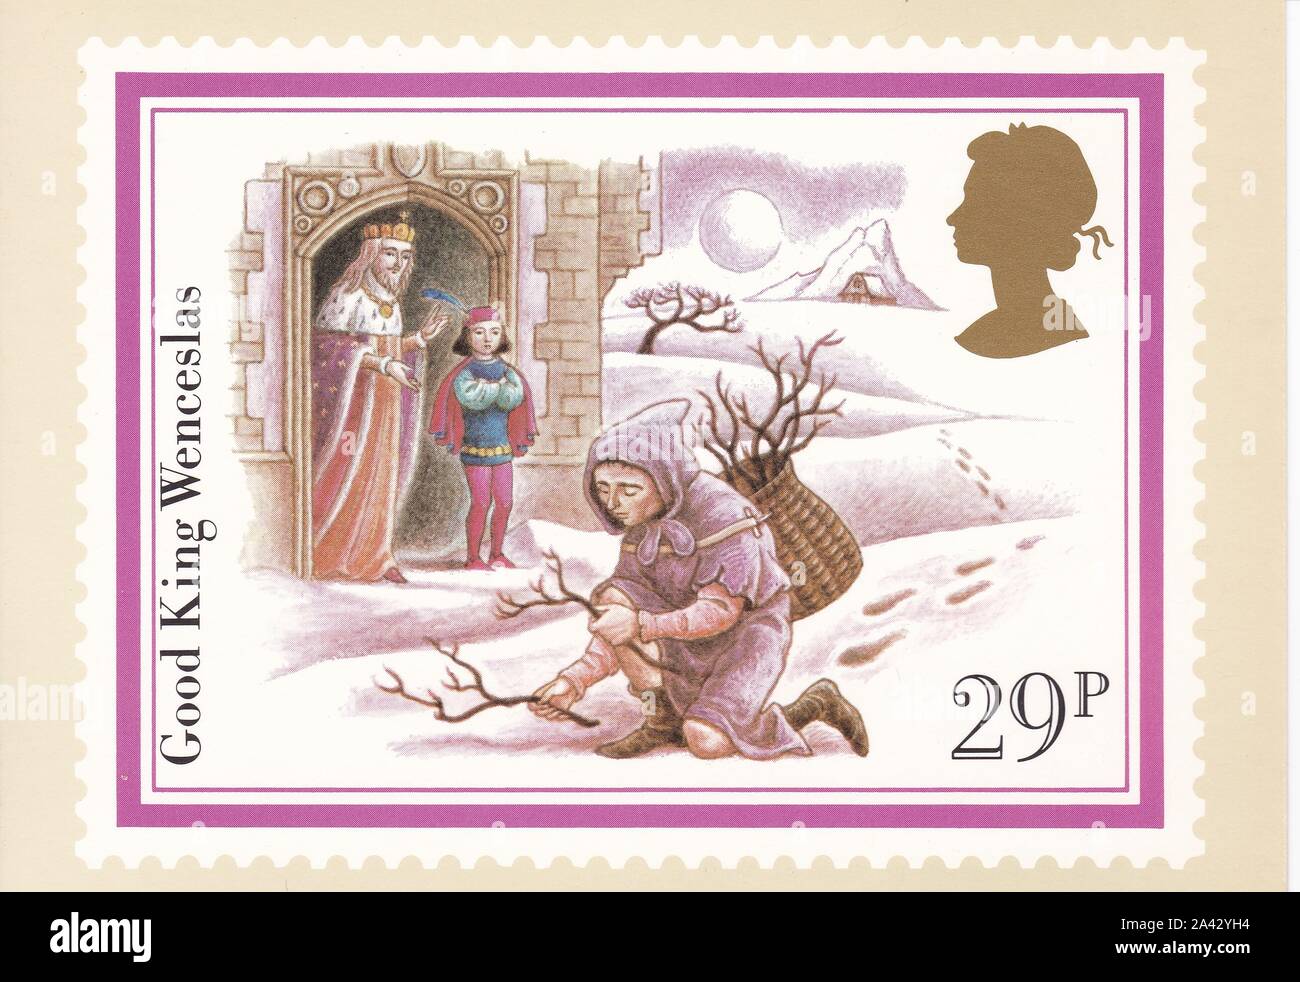 Farbe Royal Mail Postkarte von 29p-stamp Good King Wenceslas - Weihnachten 1982. Stockfoto